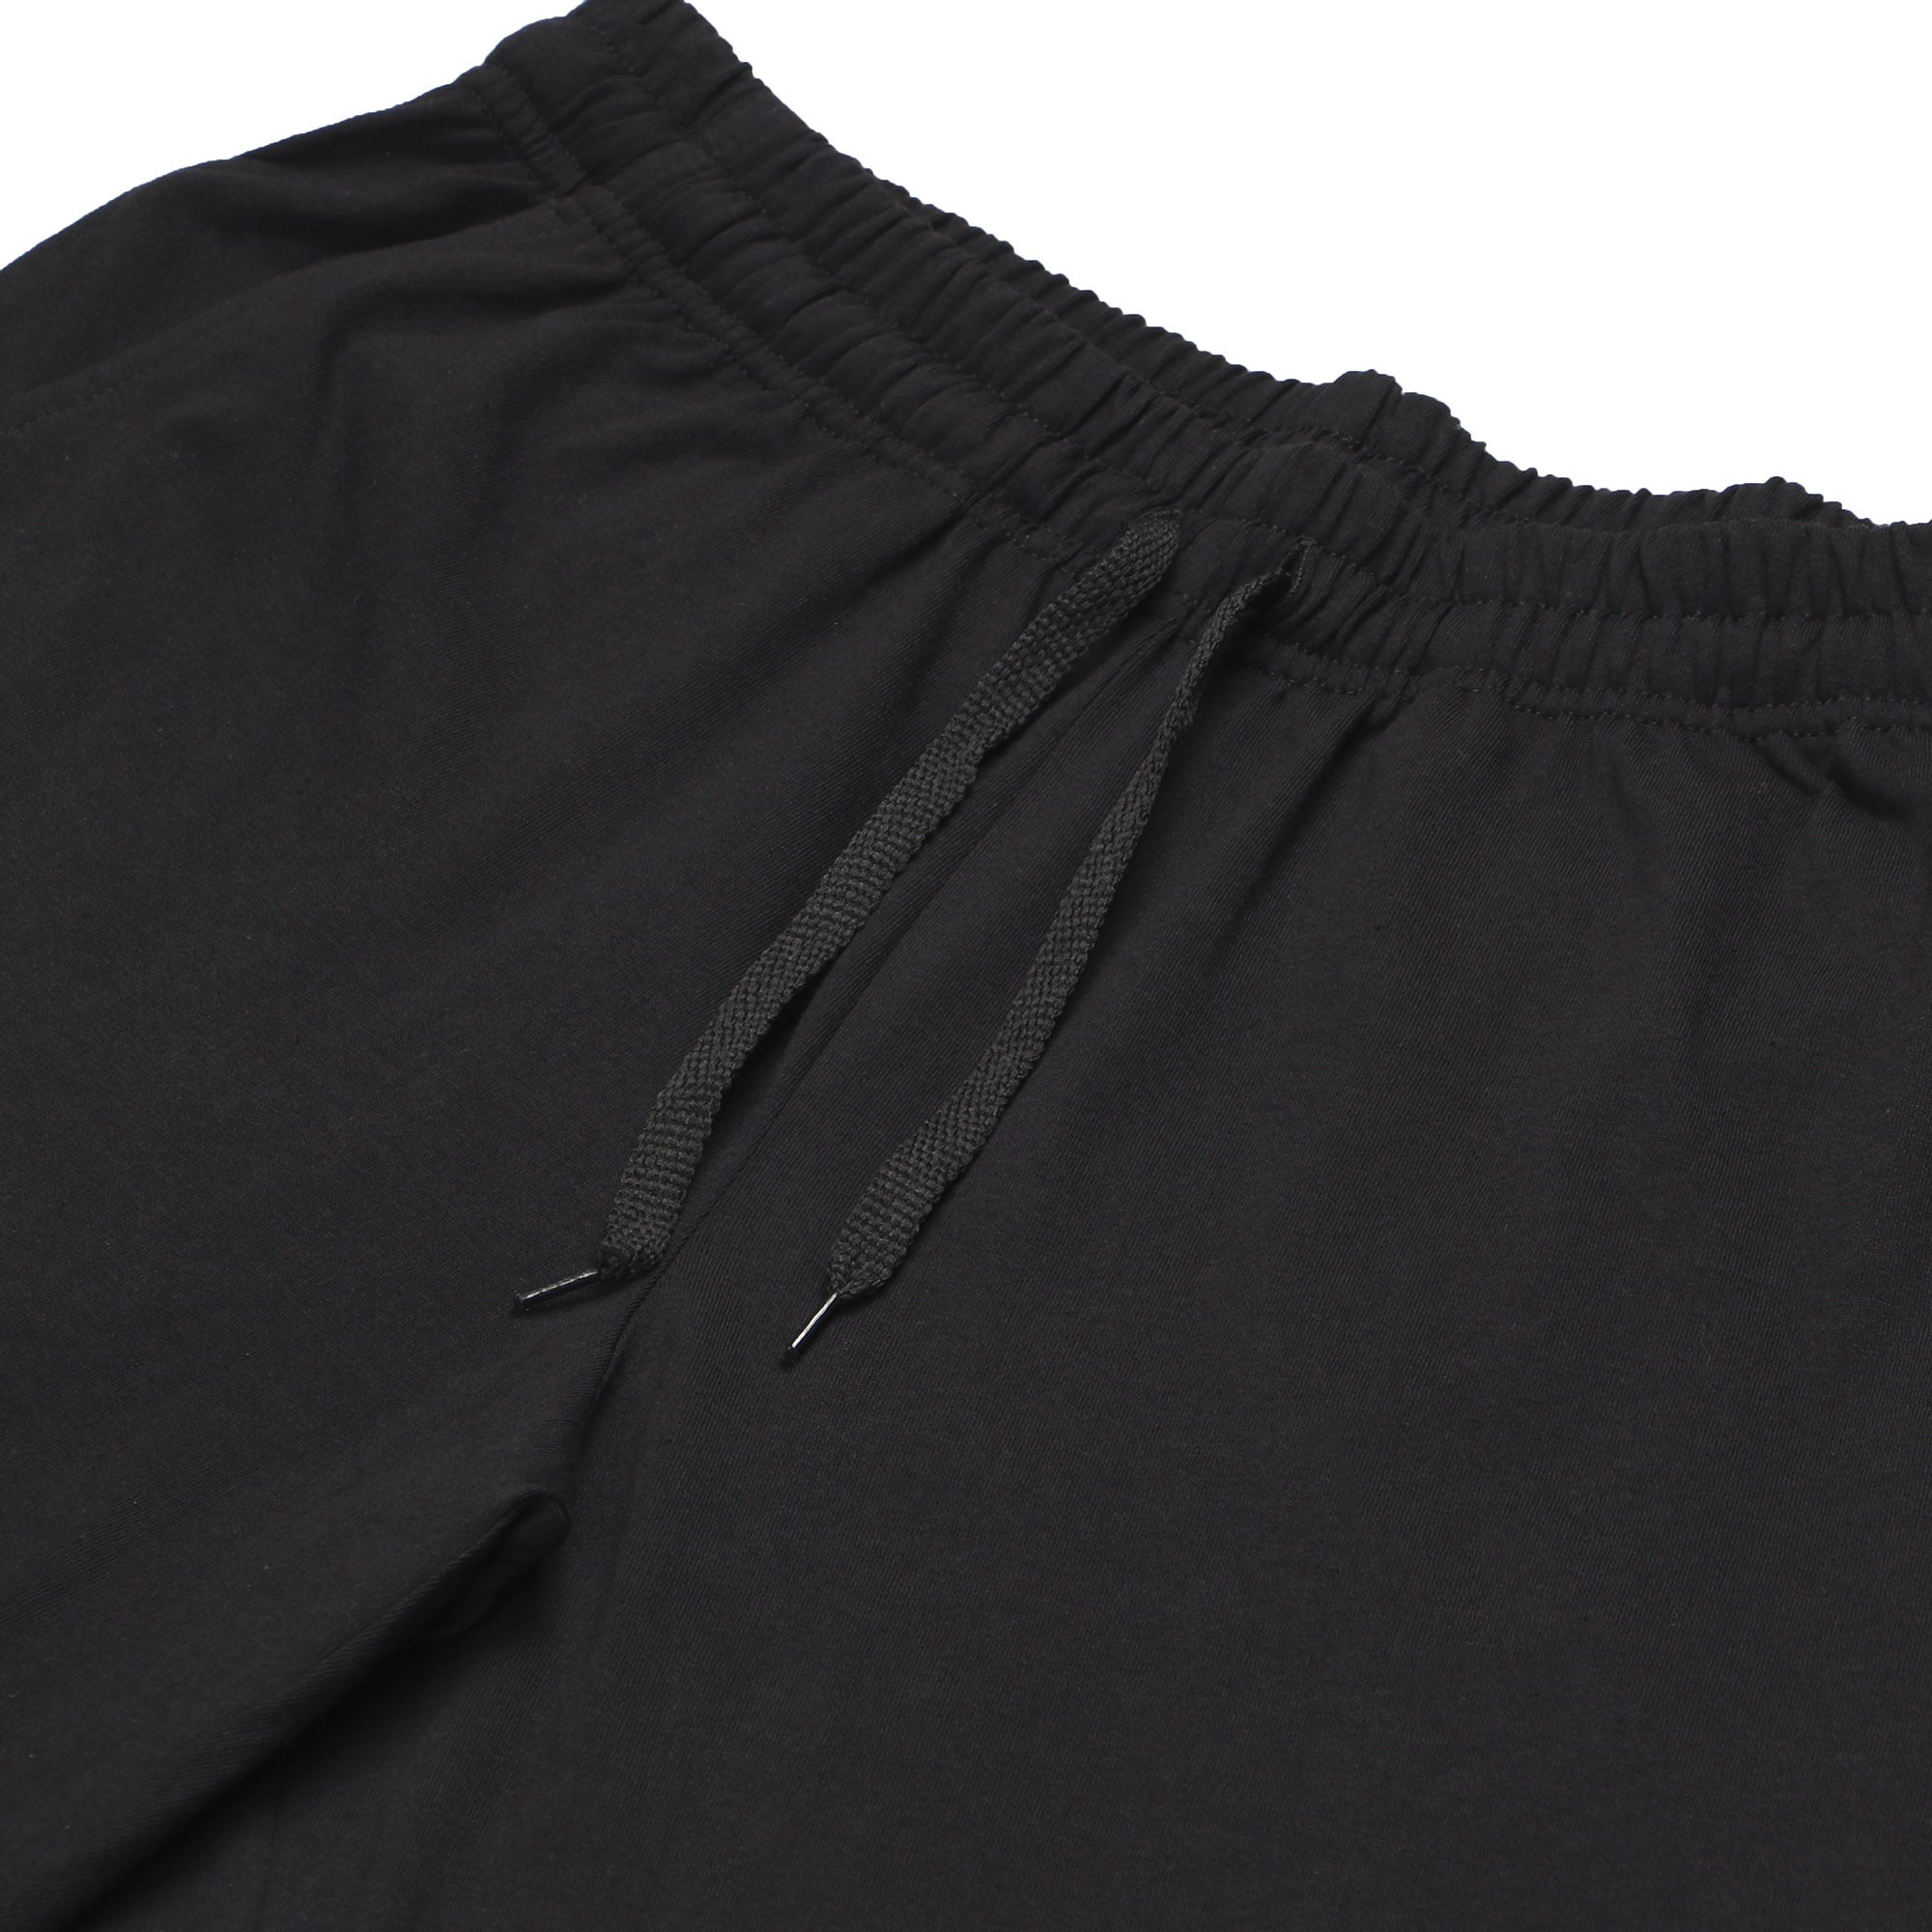 Мужские брюки Pantelemone PDB-021 50 черные, цвет черный, размер 50 - фото 2